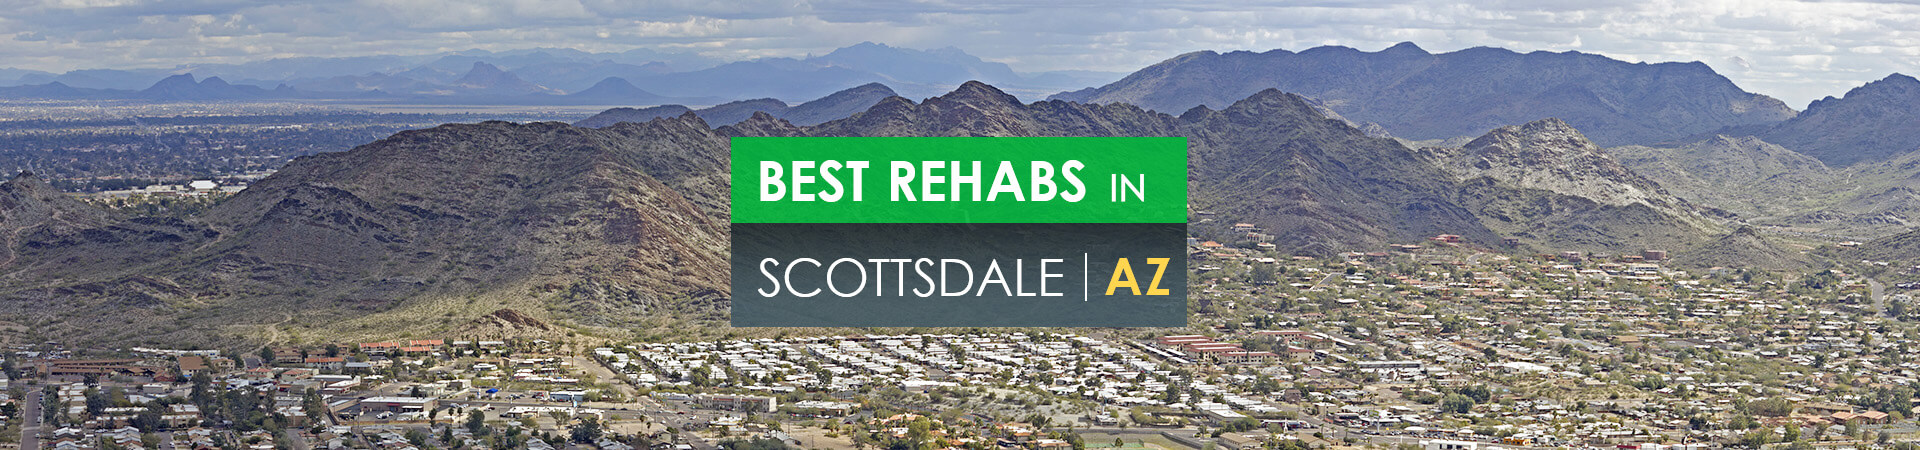 Best rehabs in Scottsdale, AZ